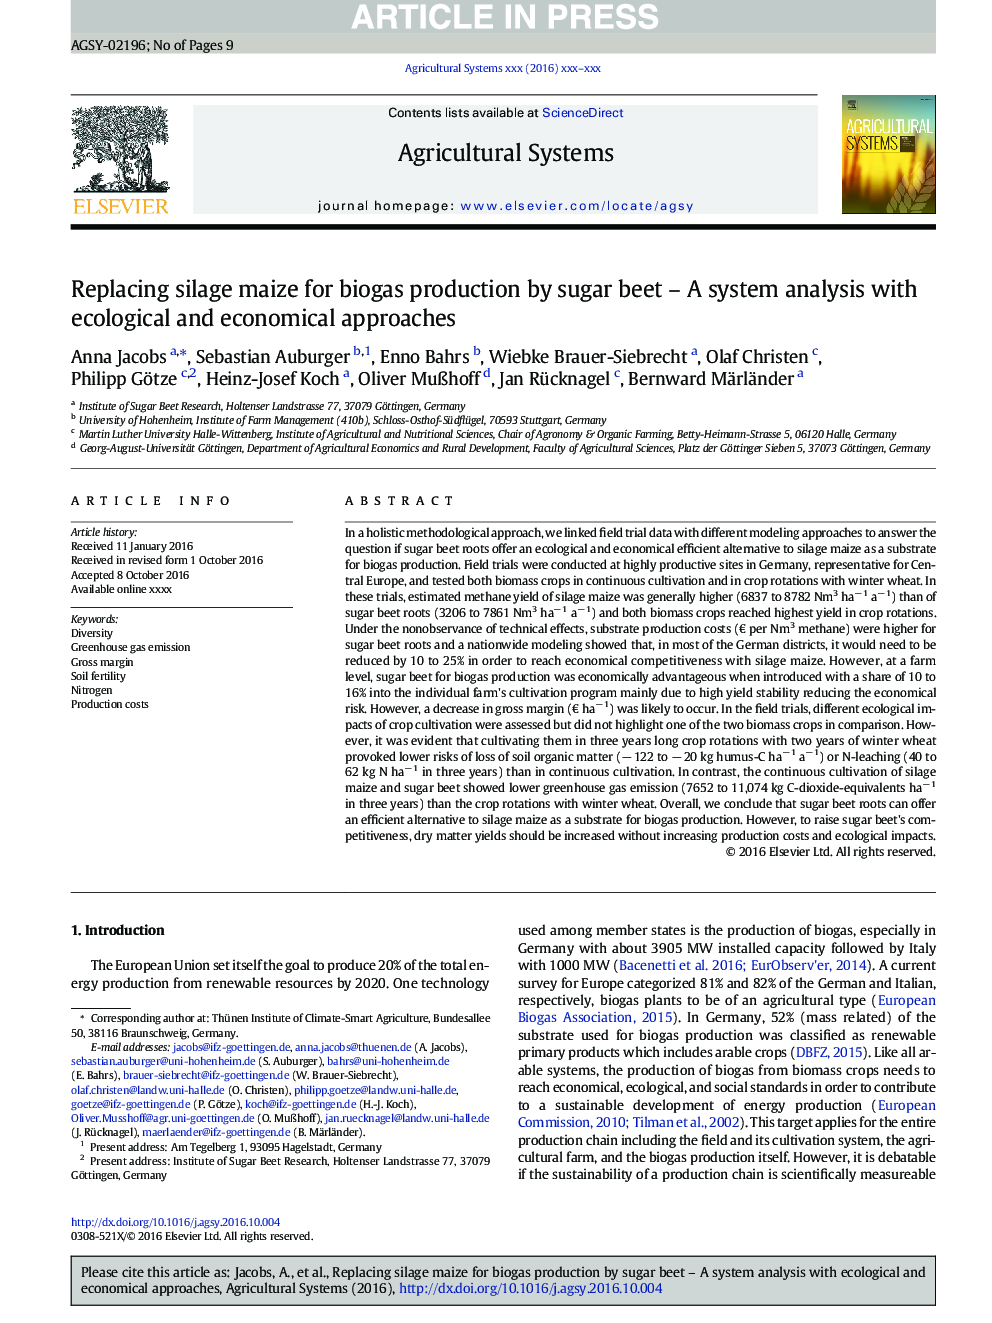 جایگزینی ذرت سیلیس برای تولید بیوگاز توسط چغندر قند - تجزیه و تحلیل سیستم با روش های زیست محیطی و اقتصادی 